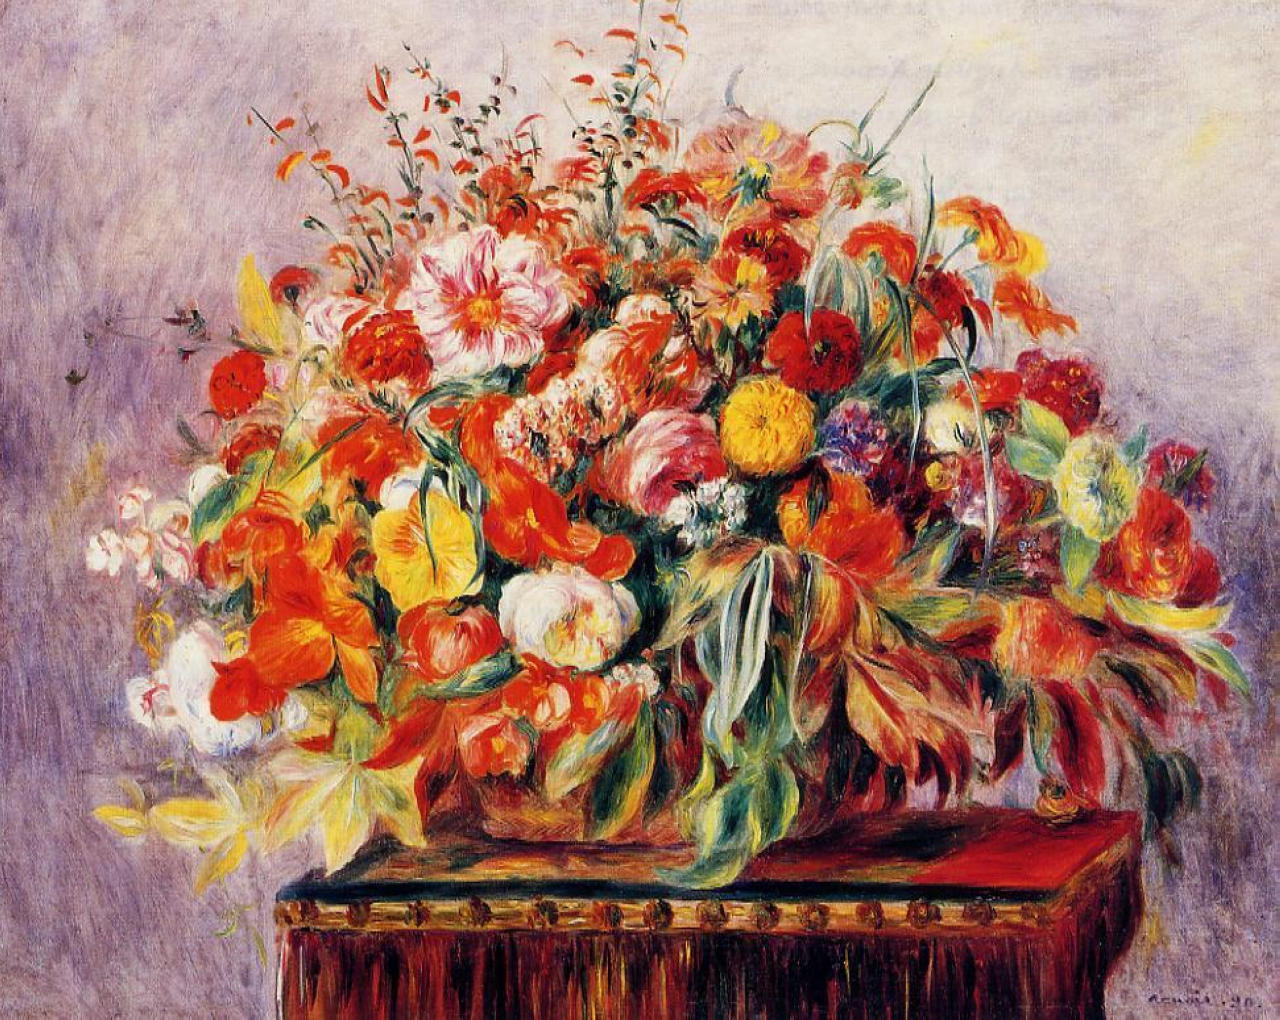 Basket of Flowers by Renoir - Pierre-Auguste Renoir painting on canvas